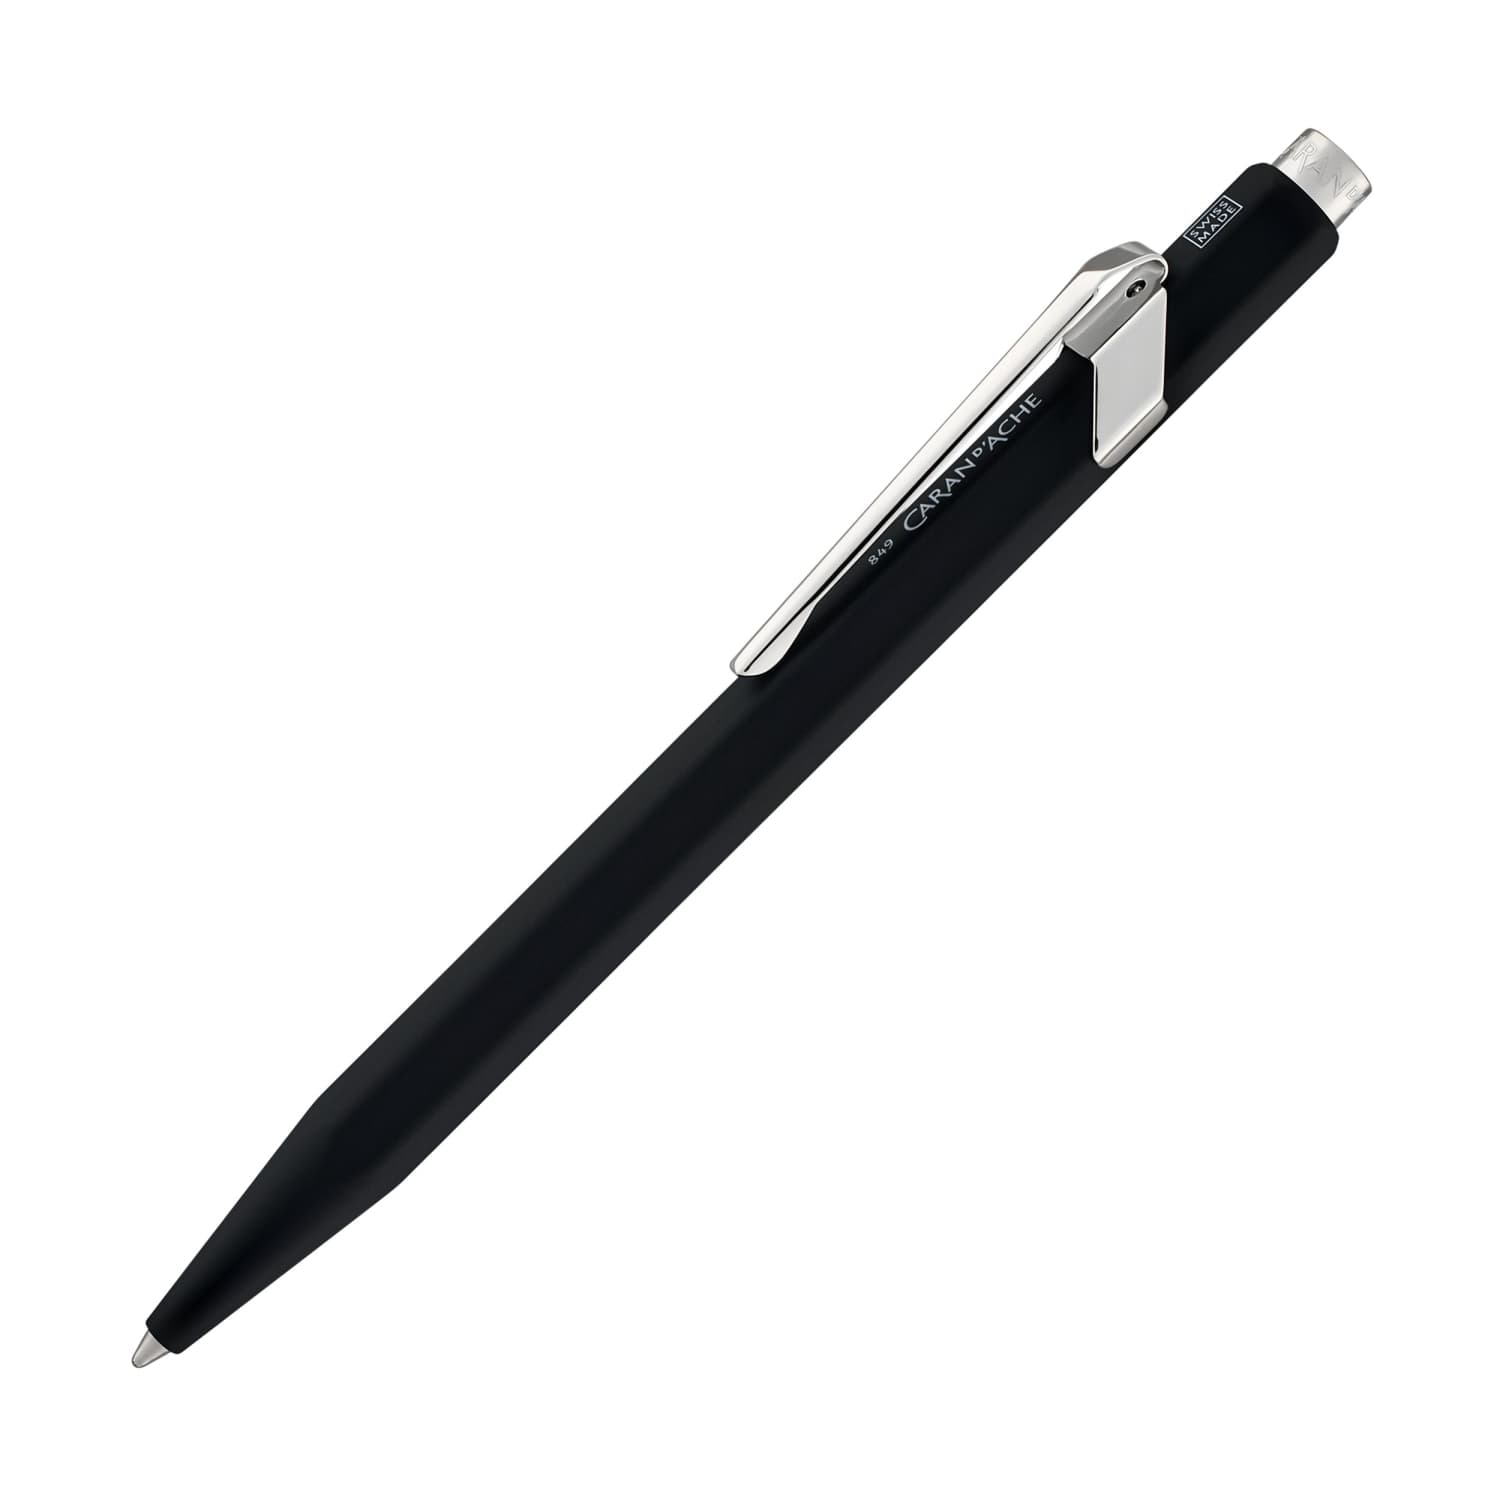 Caran d'Ache 849 Metal Ballpoint Pen - Black